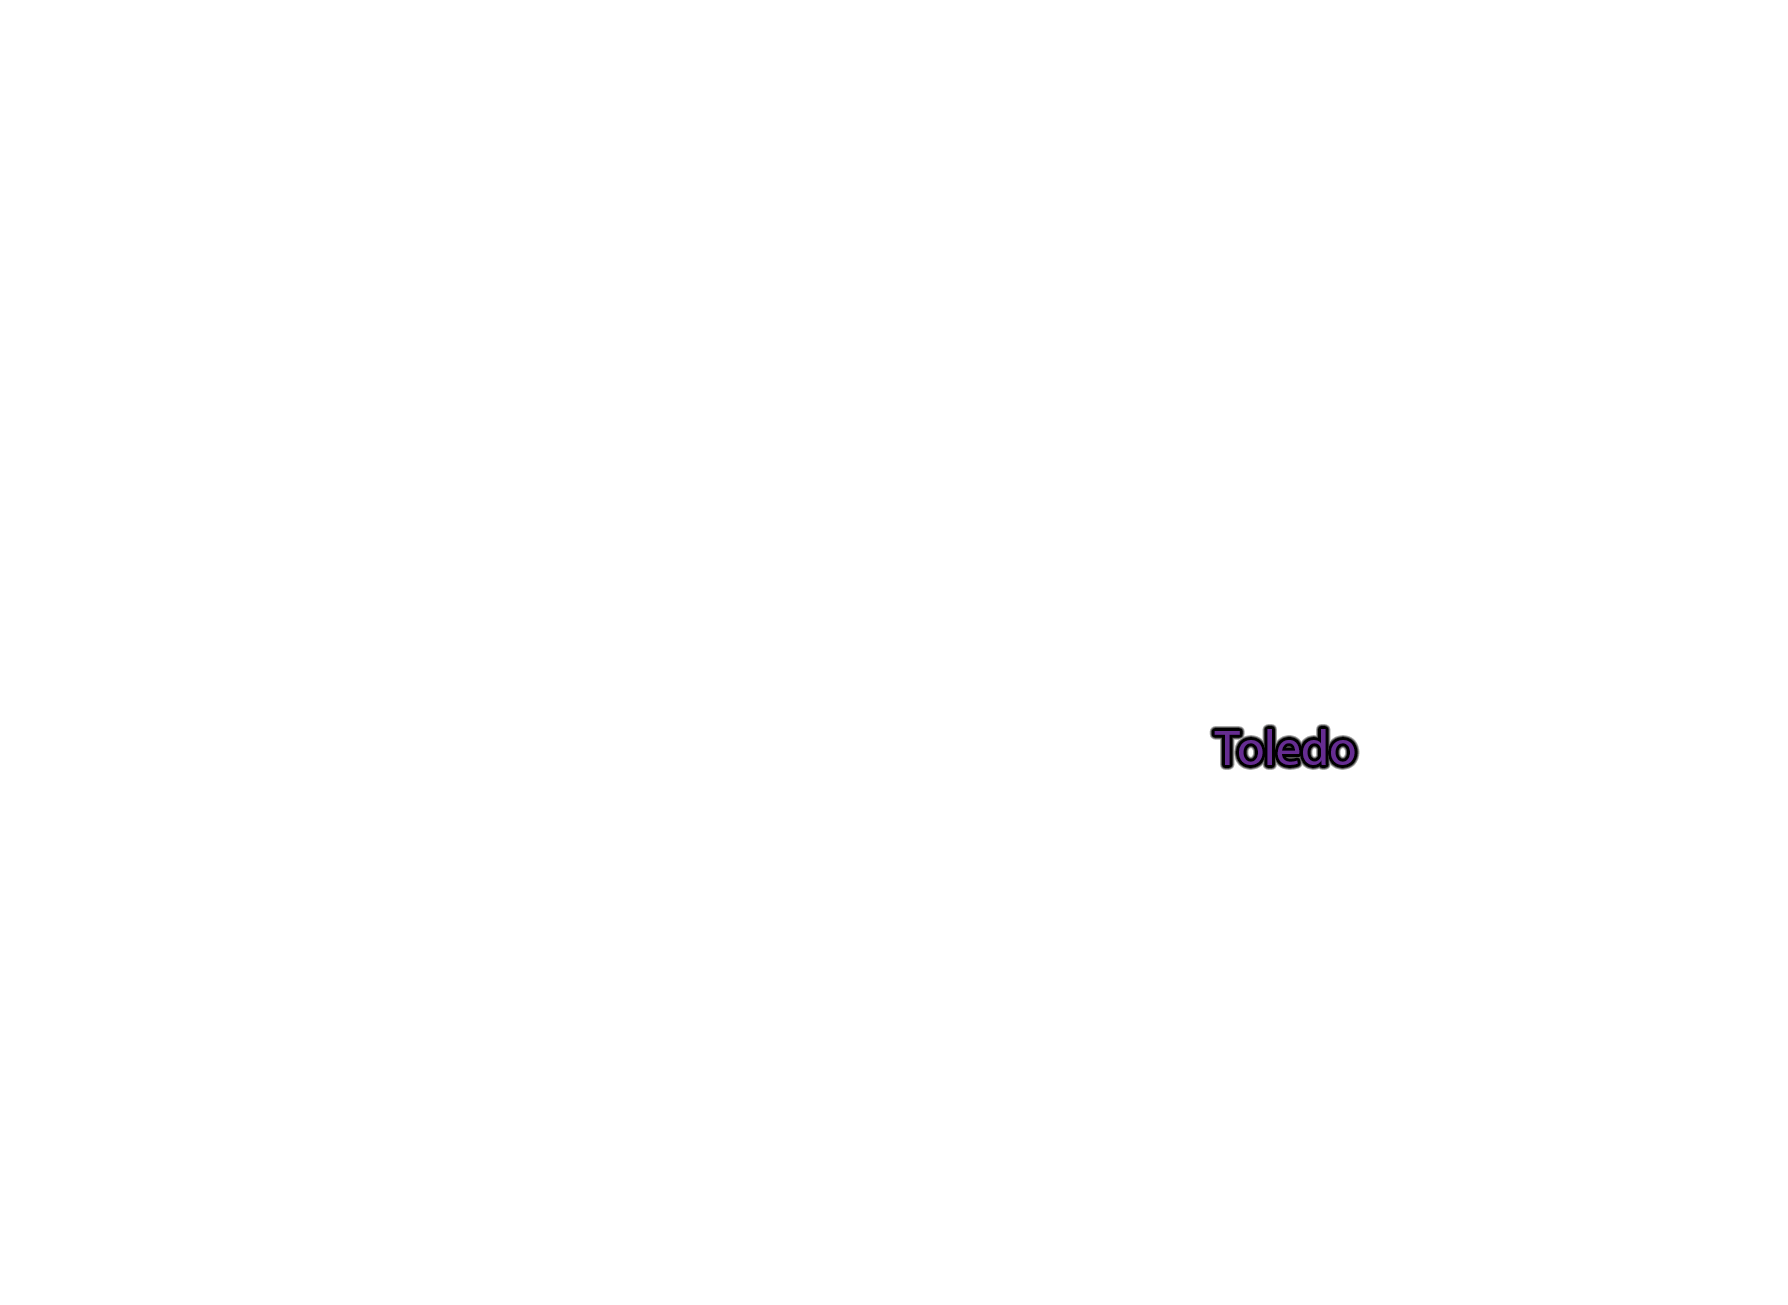 Toledo label with glow